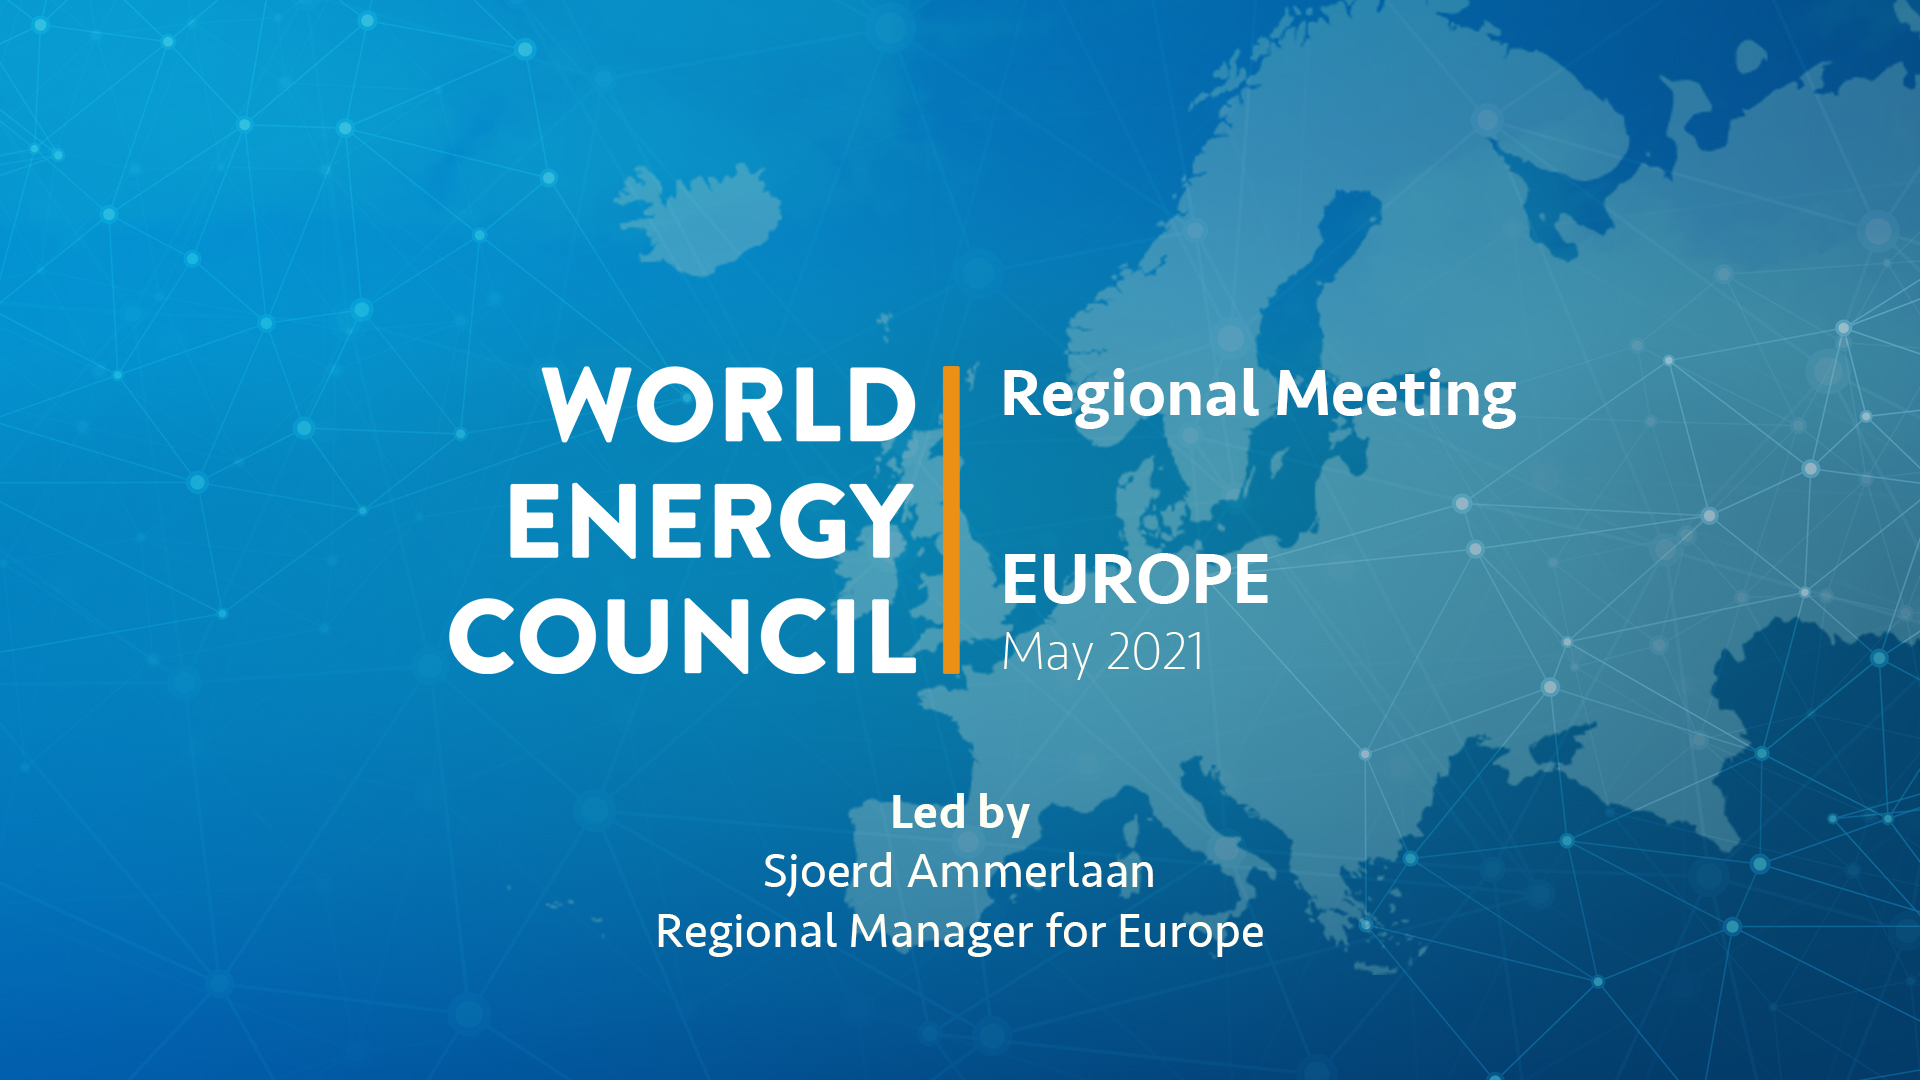 Региональная встреча МИРЭС – Европейские национальные комитеты Совета объединяются вокруг водородной энергетики